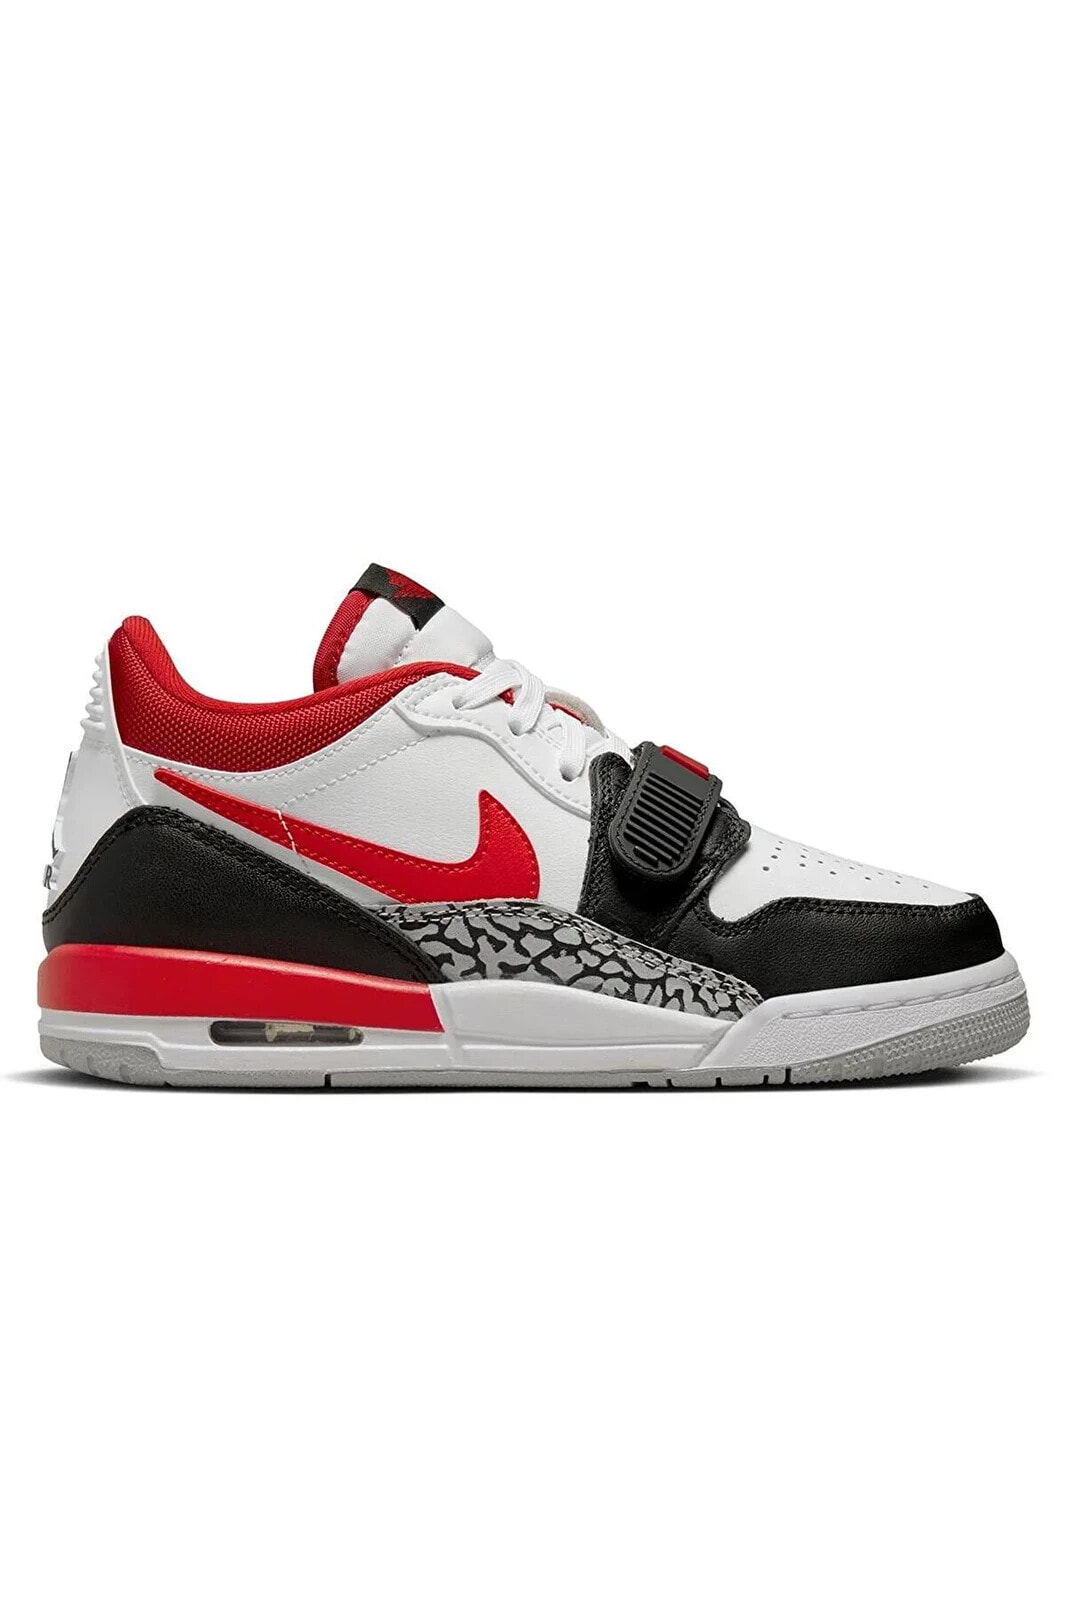 Air Jordan Legacy 312 Low Fire Red CD9054-160 Sneaker